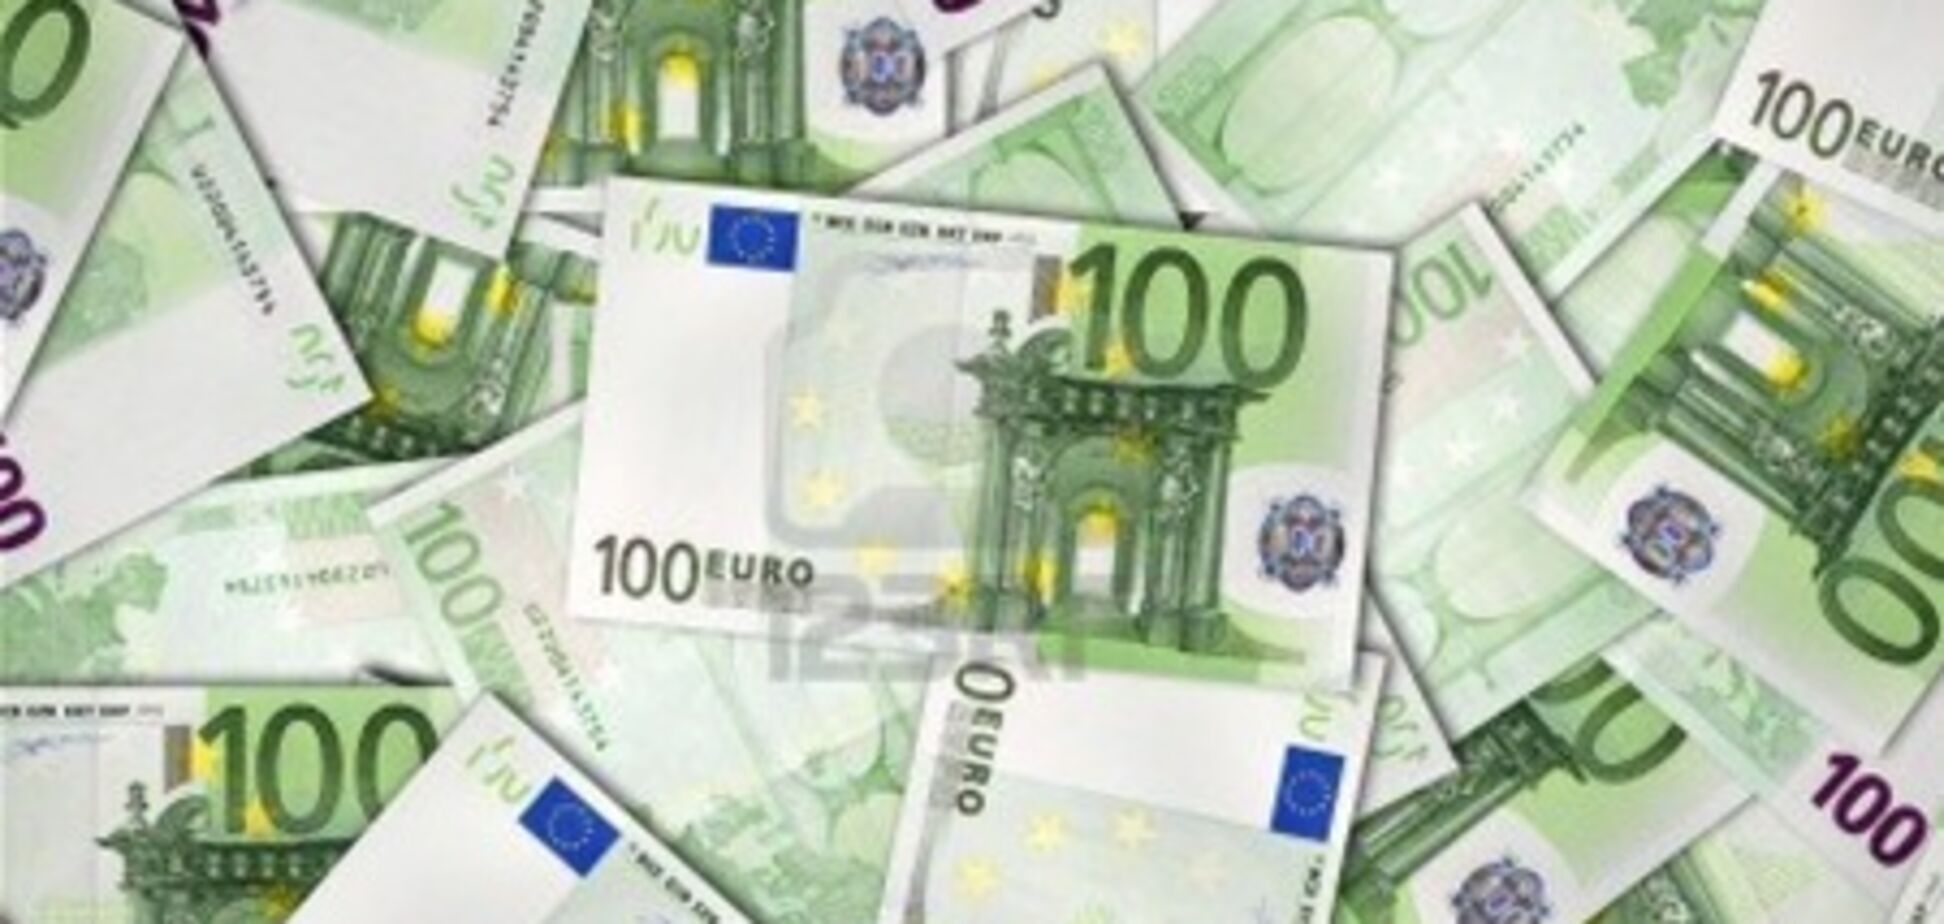 Туристам запретили тратить более 100 евро в день